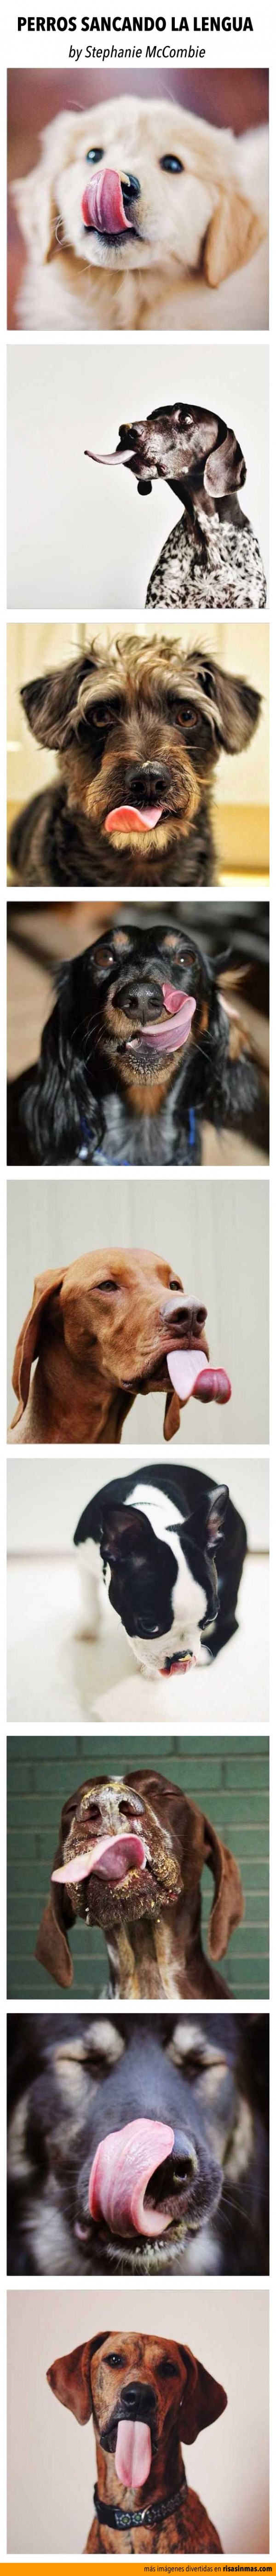 Perros sacando la lengua